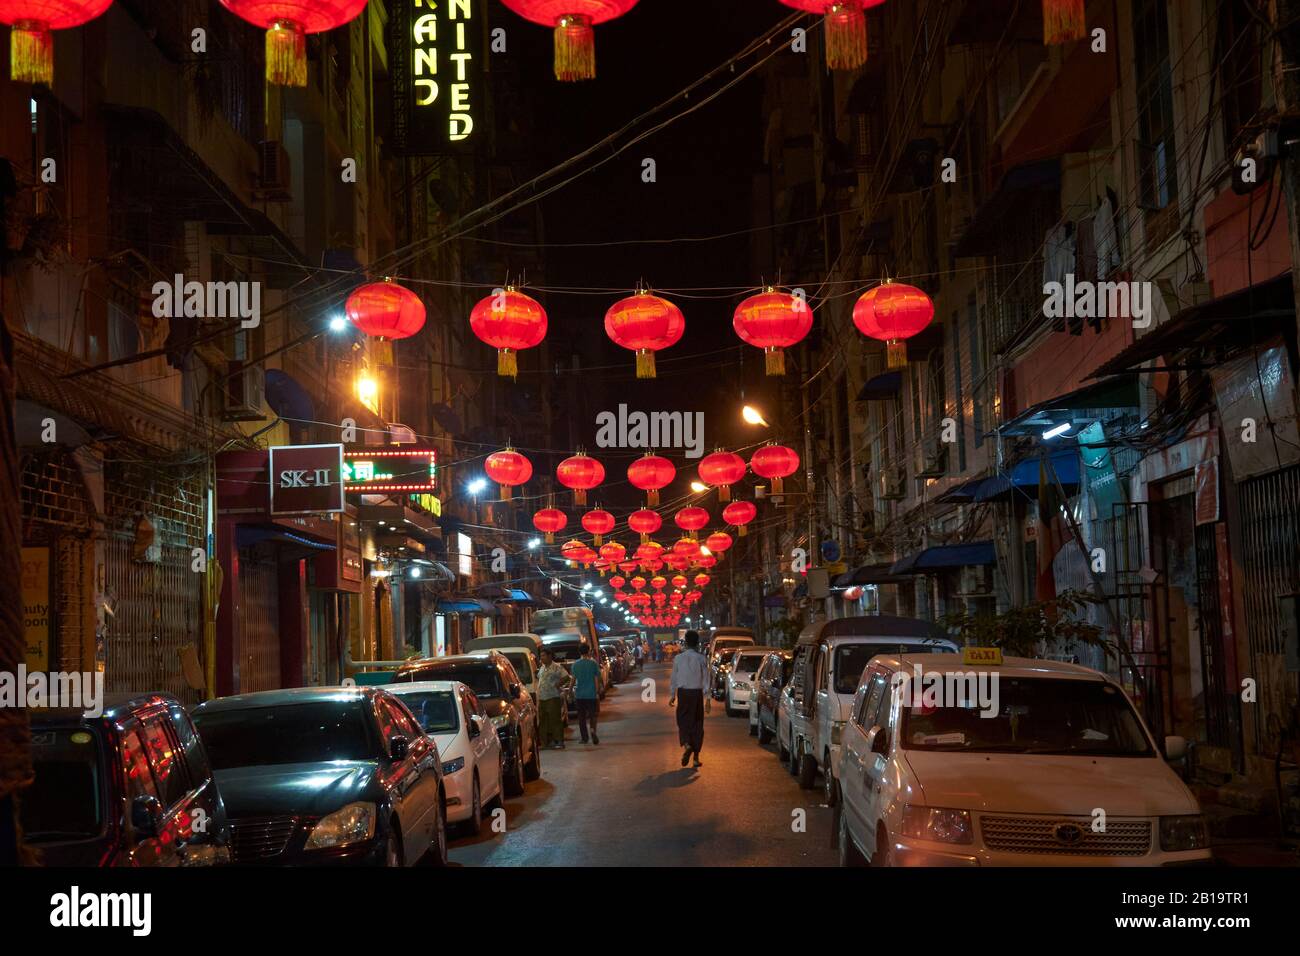 für das chinesische Neujahrsfest mit roten Lampions geschmückte Straße, chinesisches Viertel, Yangon, Myanmar Foto Stock